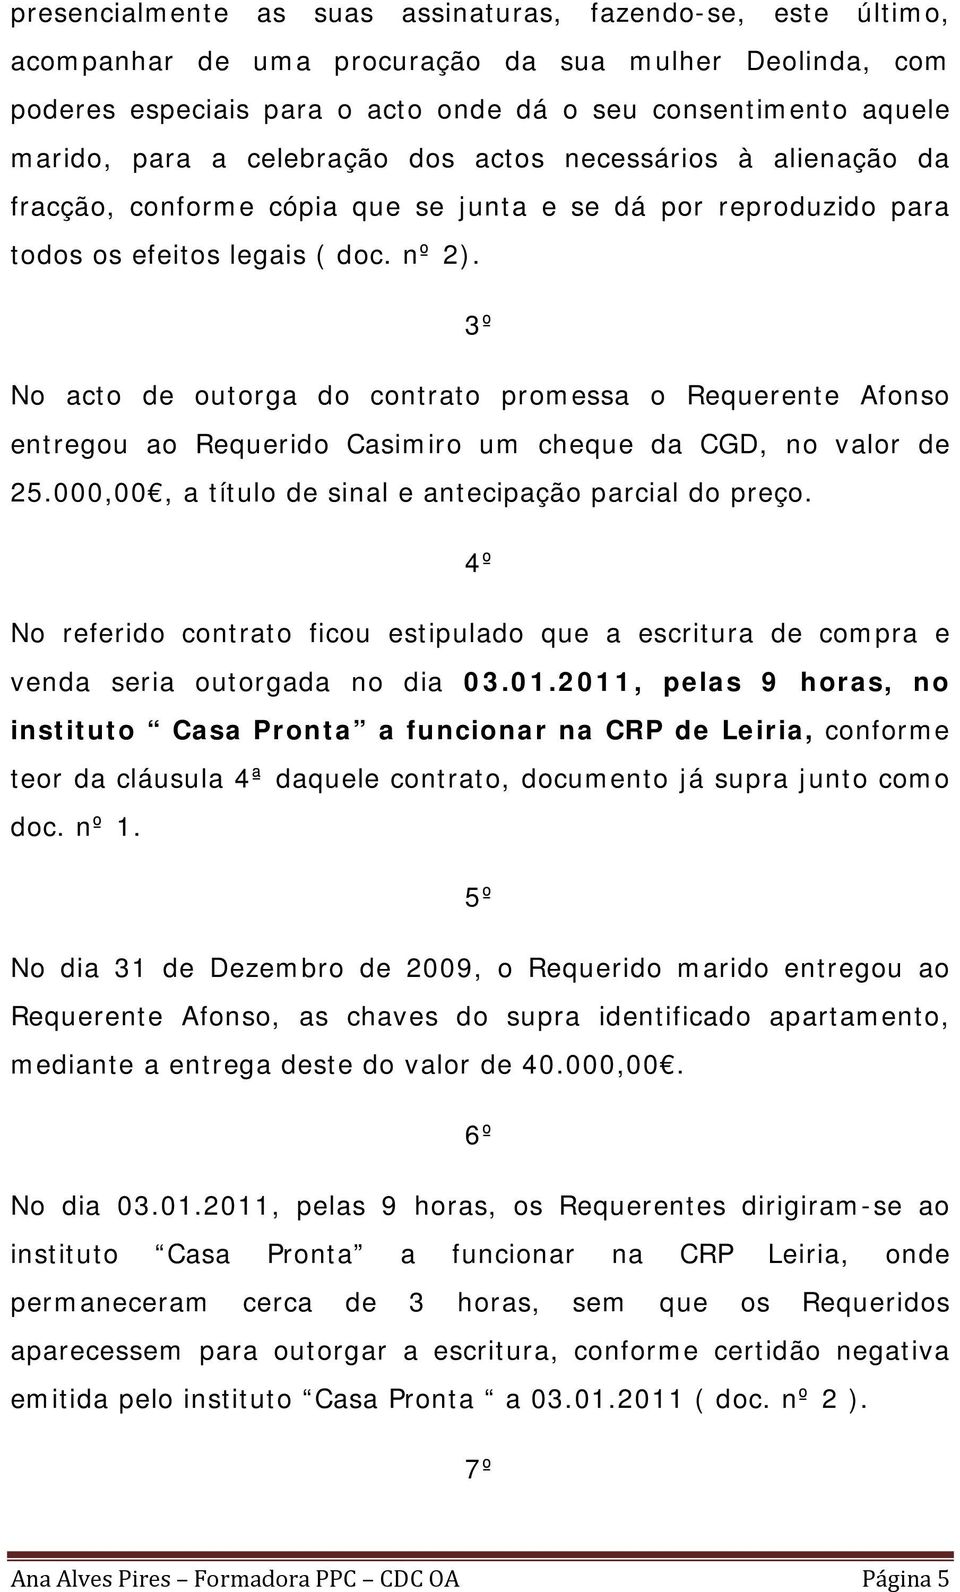 3º No acto de outorga do contrato promessa o Requerente Afonso entregou ao Requerido Casimiro um cheque da CGD, no valor de 25.000,00, a título de sinal e antecipação parcial do preço.